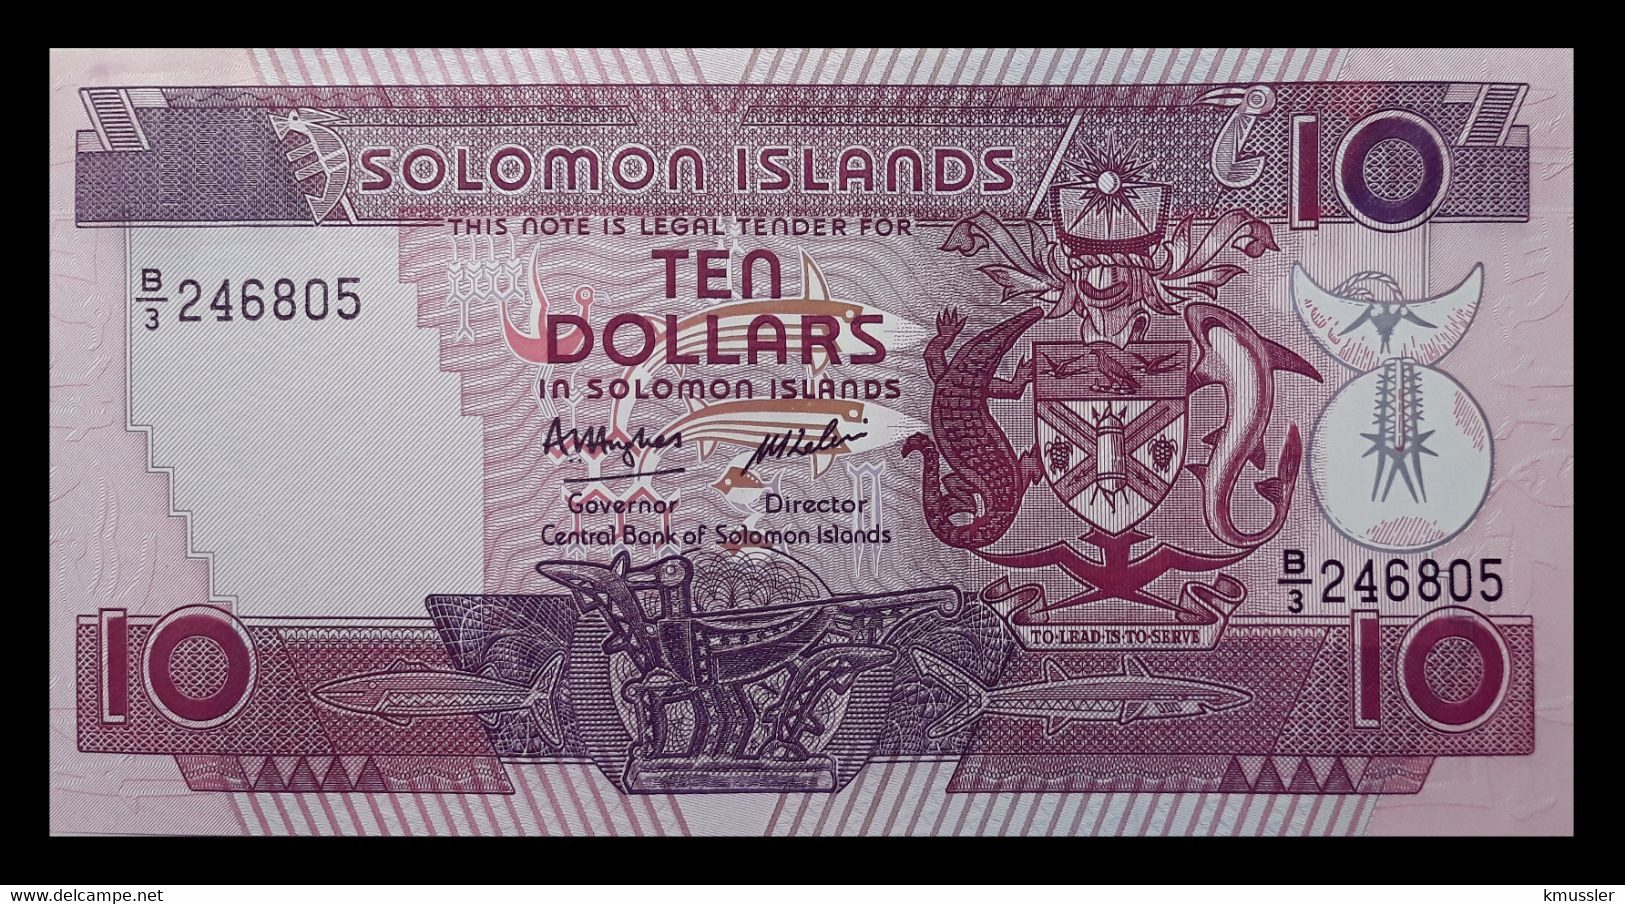 # # # Banknote Von Den Solomon-Inseln 10 Dollars UNC # # # - Salomons